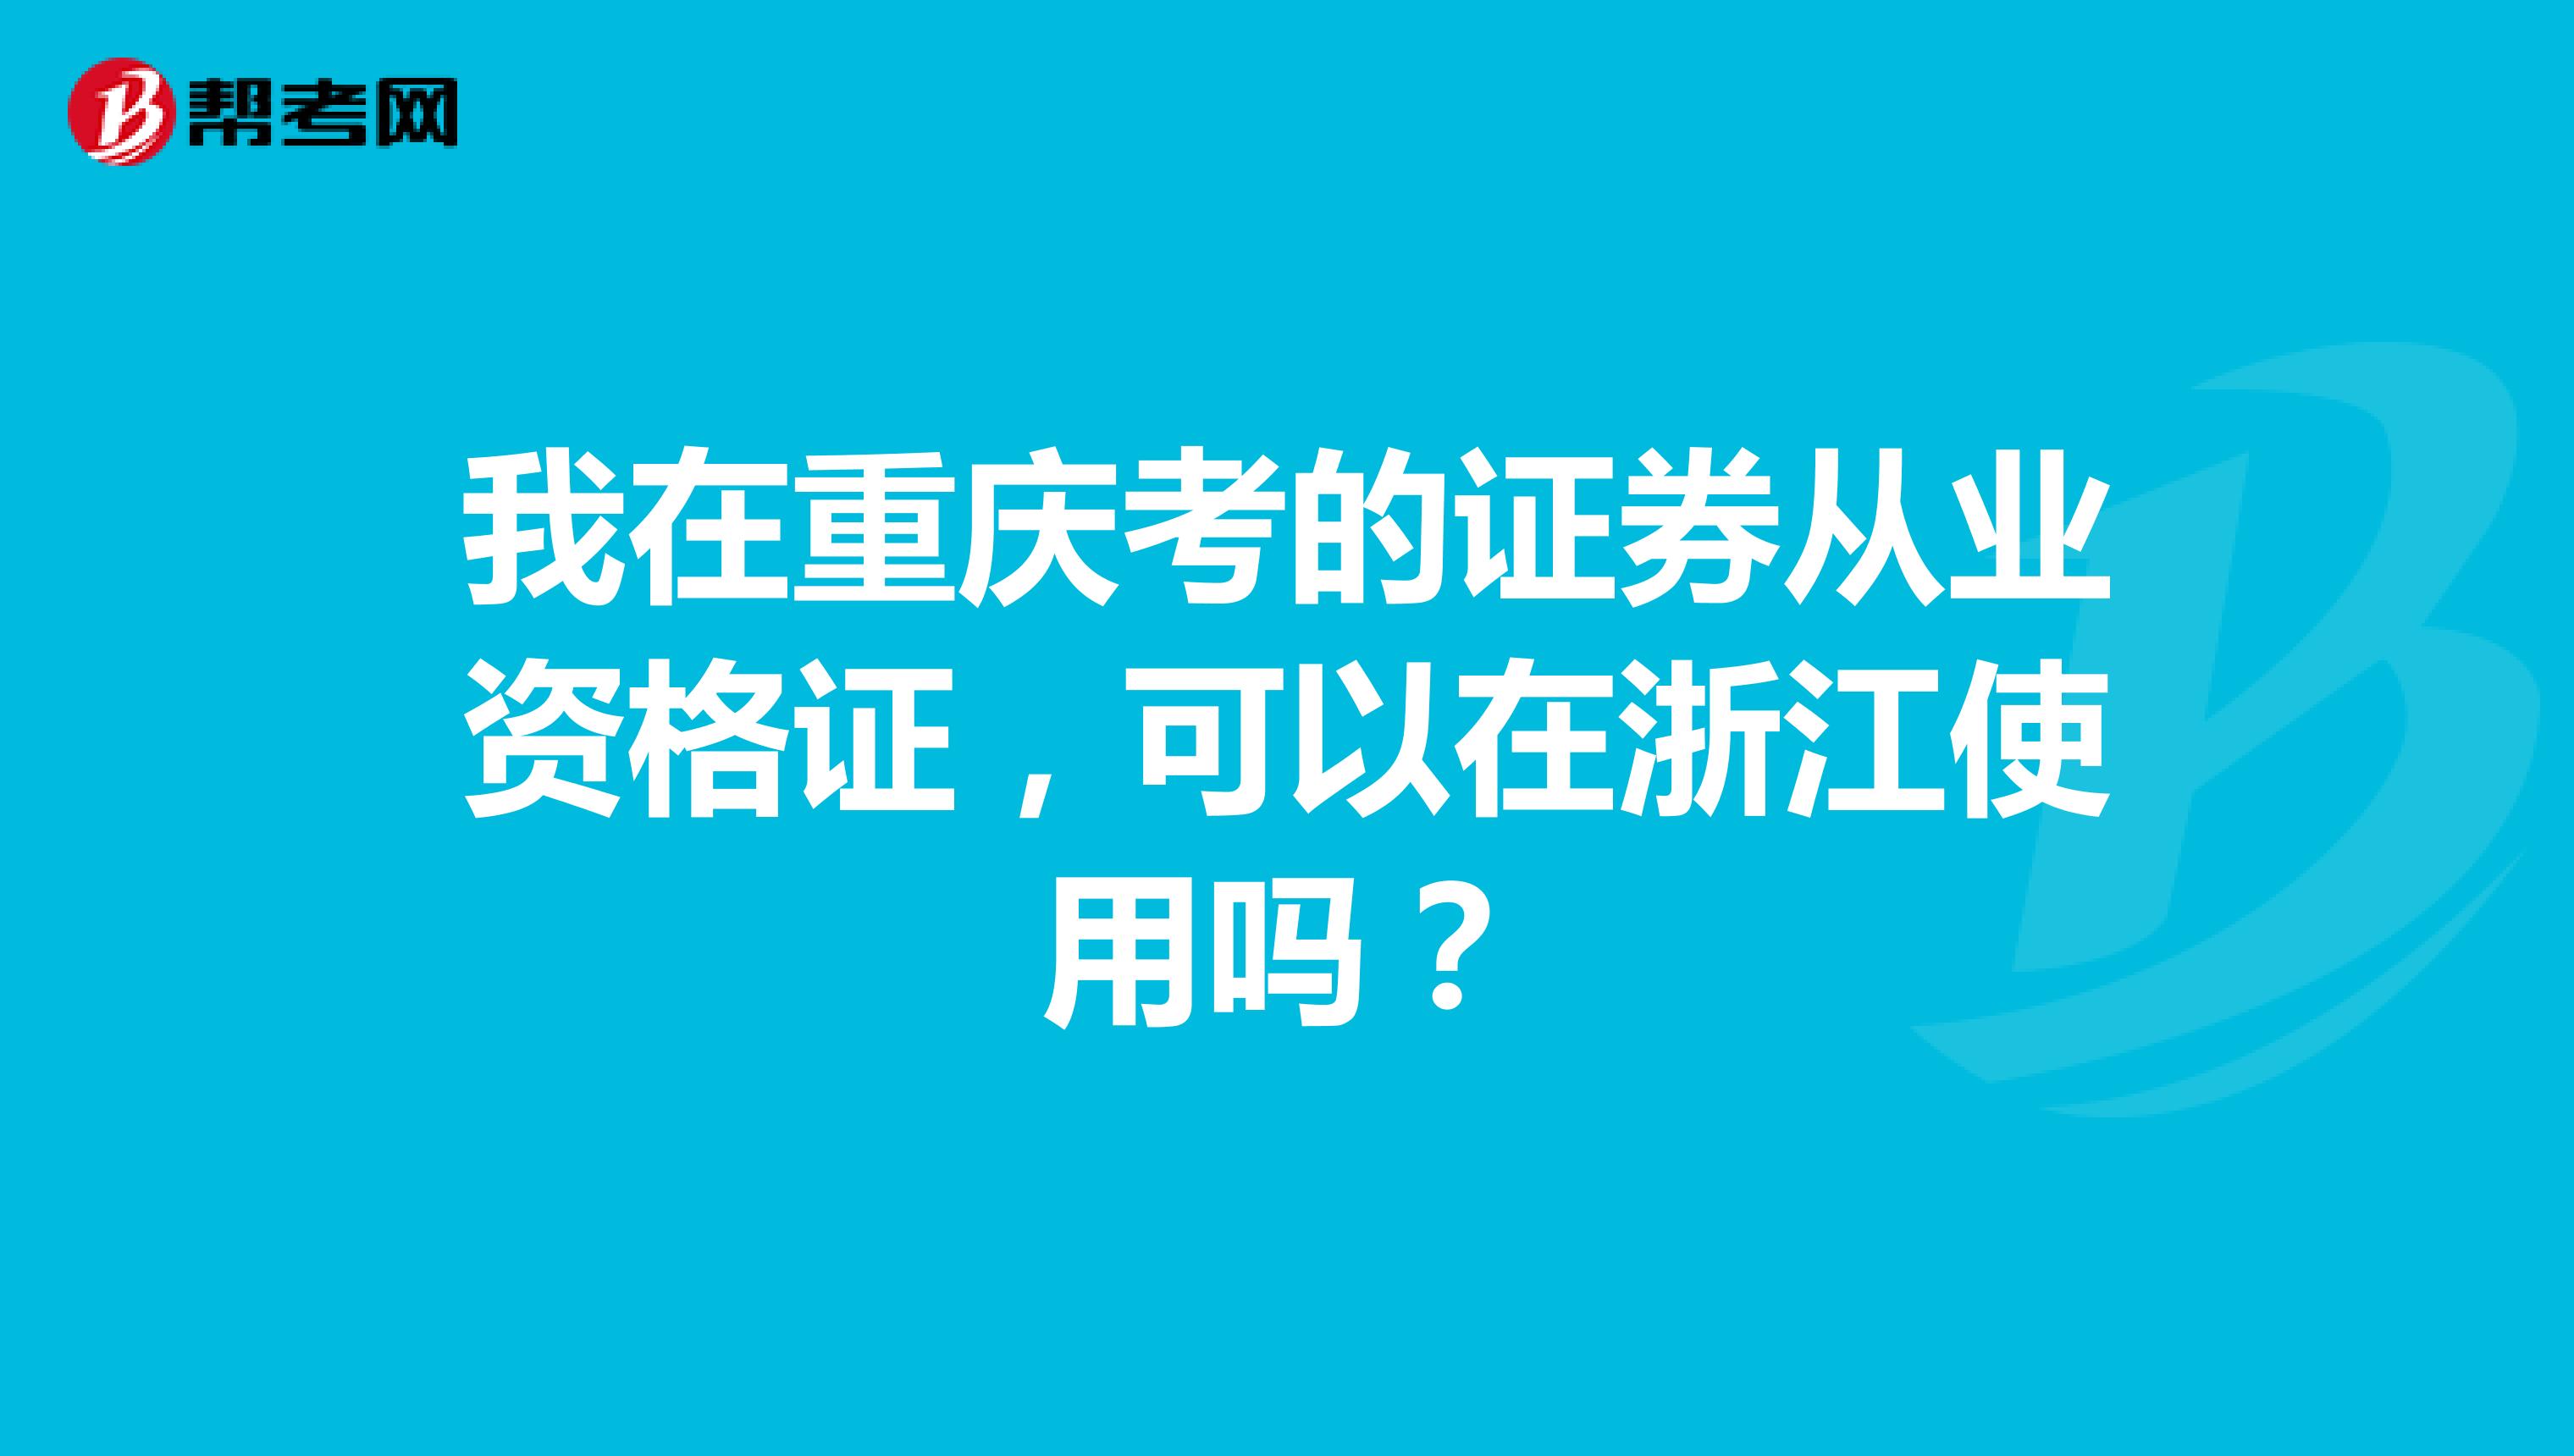 我在重庆考的证券从业资格证，可以在浙江使用吗？